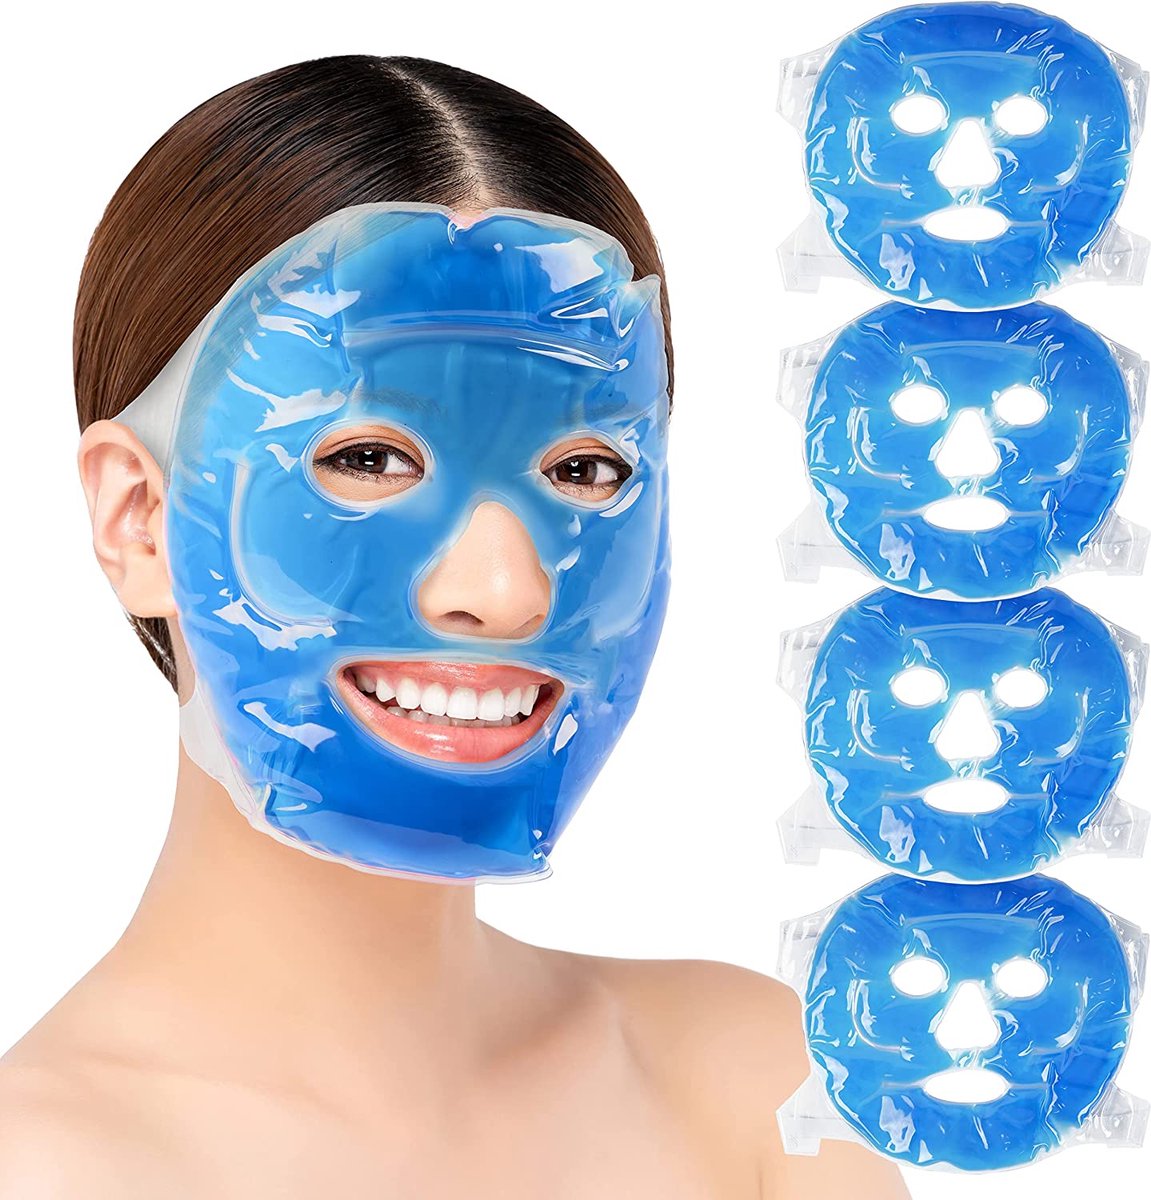 GelMasker - Klittenband Masker- Verzorging - Thermo therapeutische gelmasker - Herbruikbaar - Warme behandeling - Koude behandeling - Gezond - Goed voor de huid